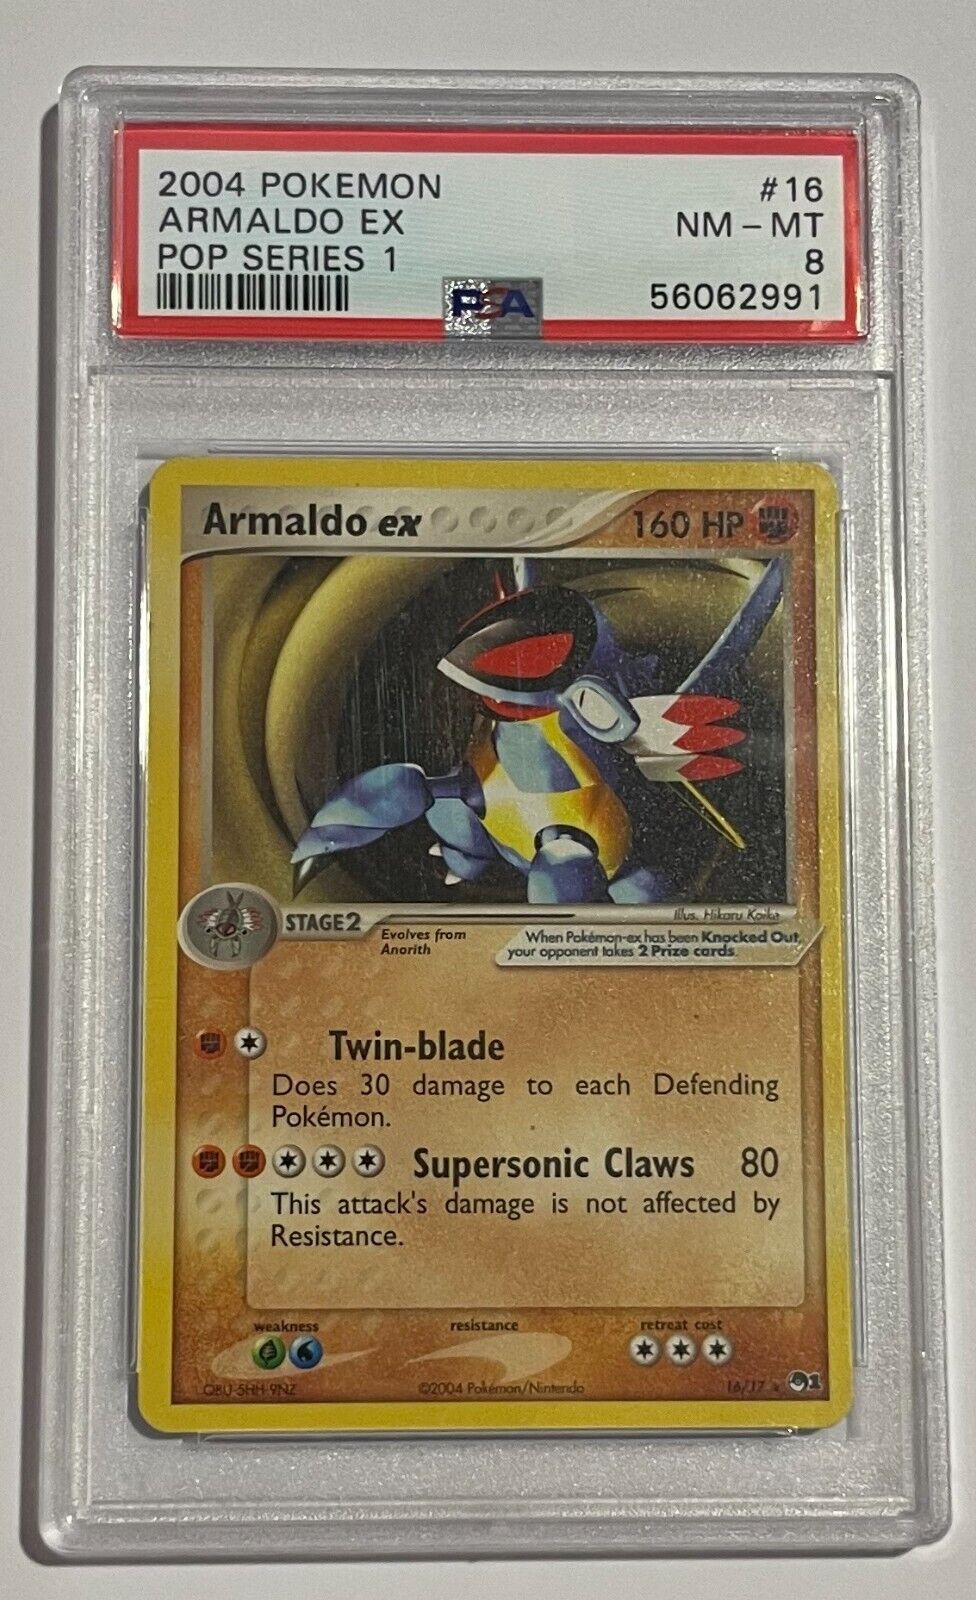 2004 Pokemon Pop Series 1 Armaldo EX #16 PSA 8